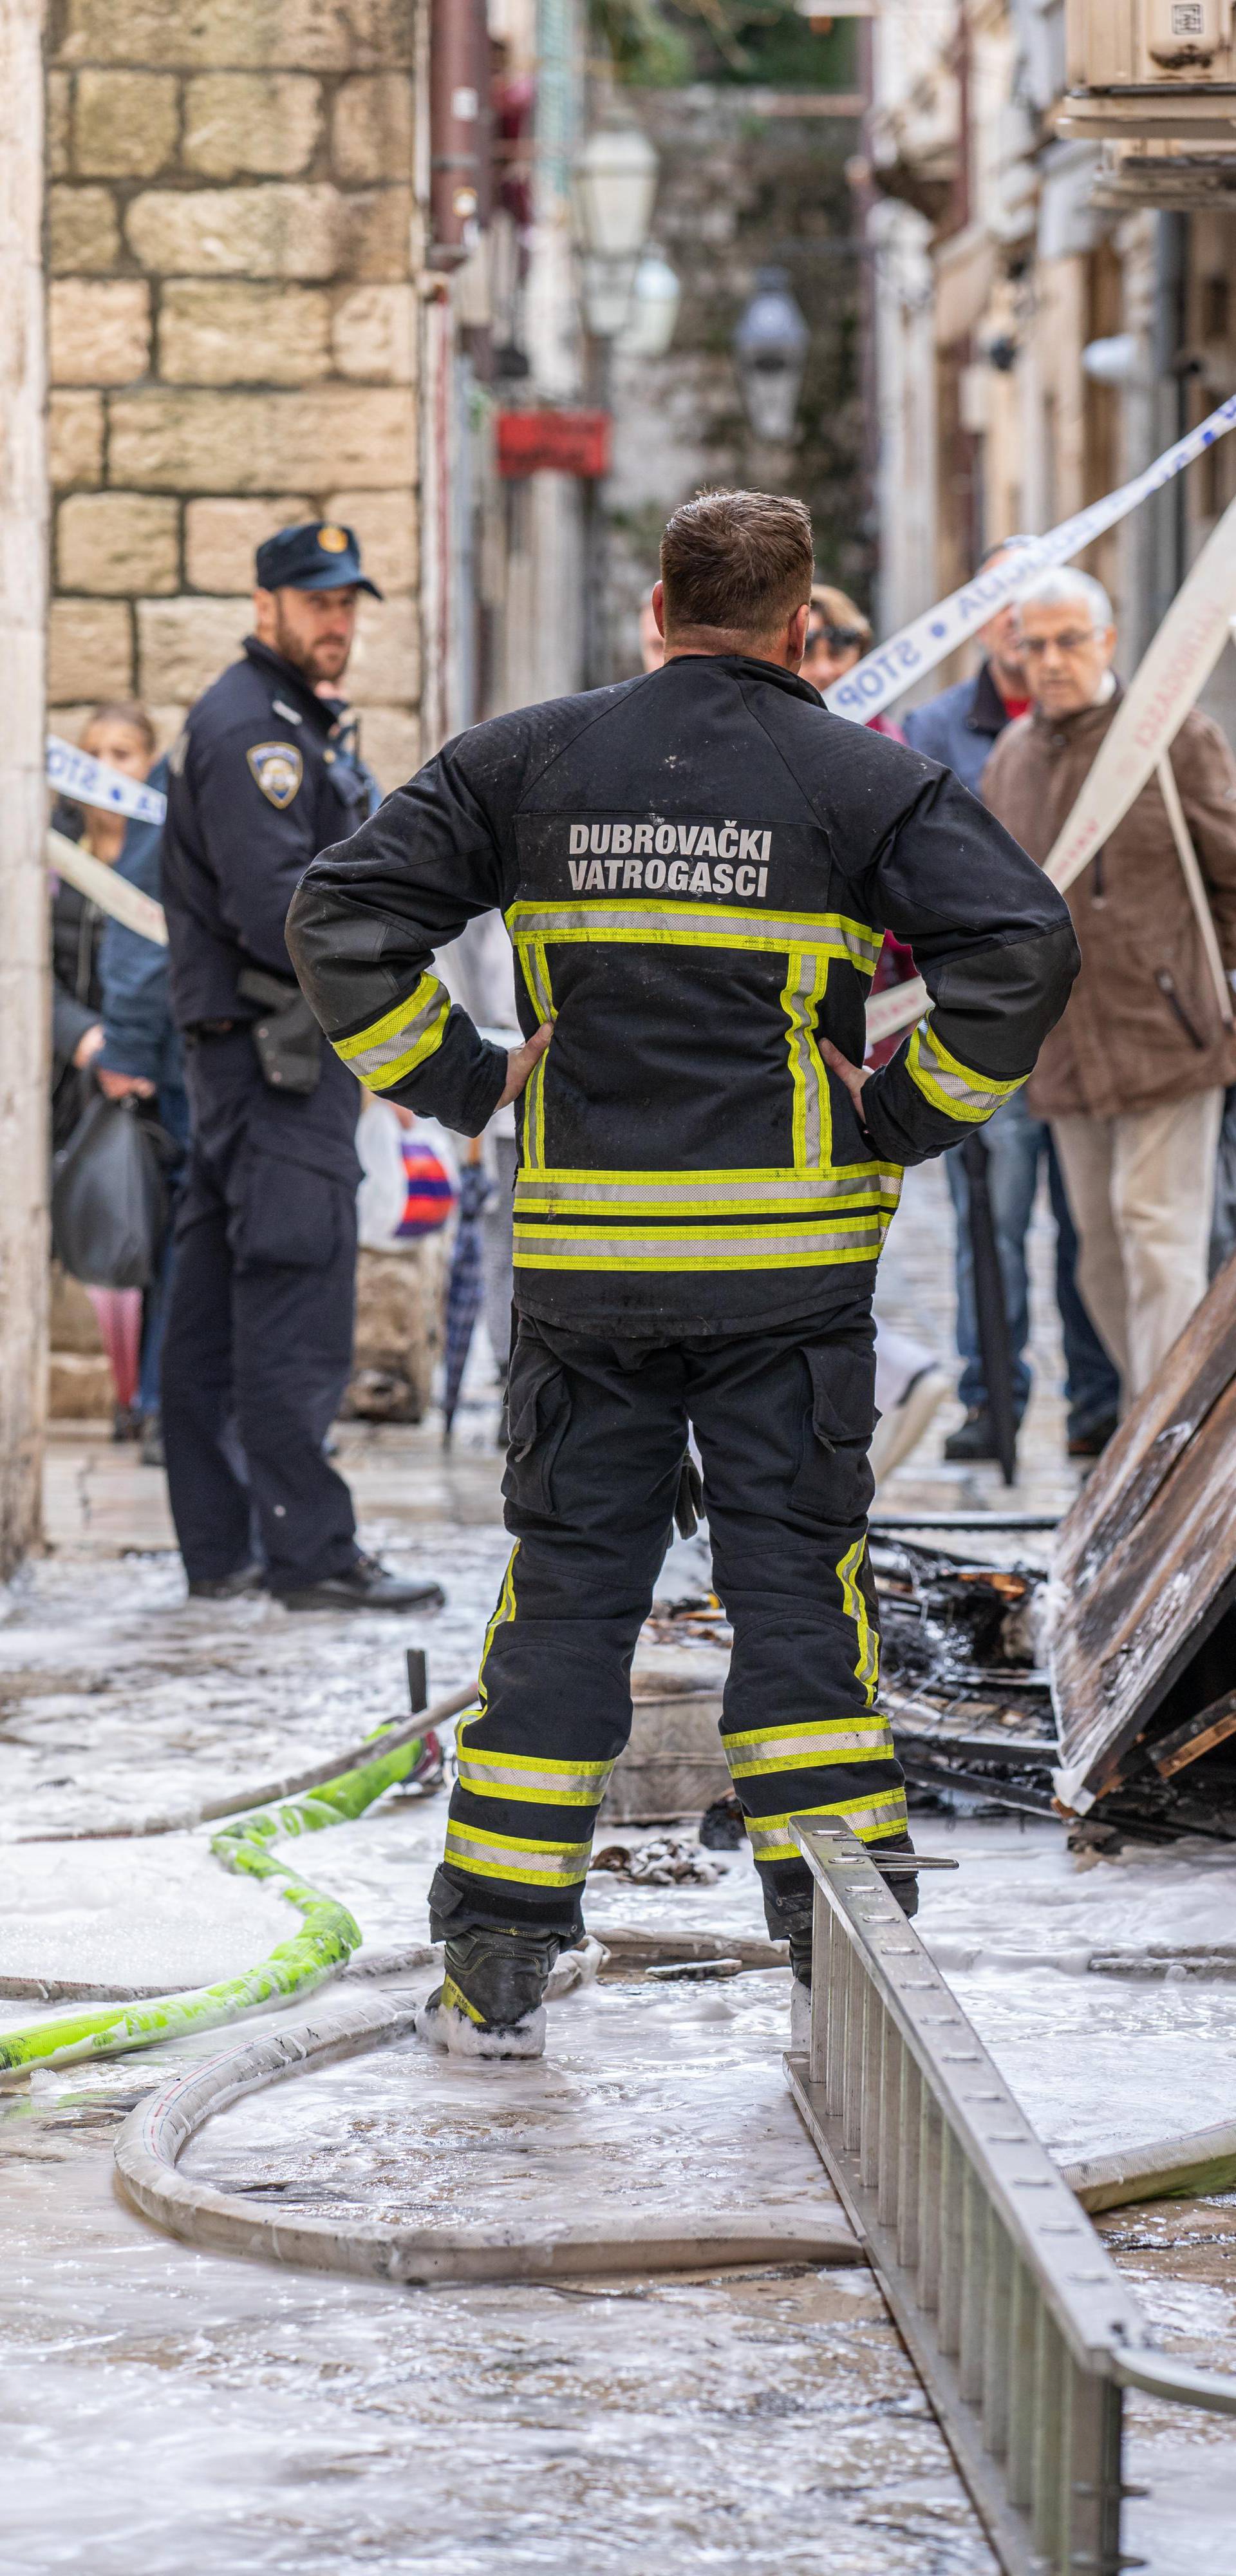 Dubrovnik: U staroj gradskoj jezgri došlo je do požara